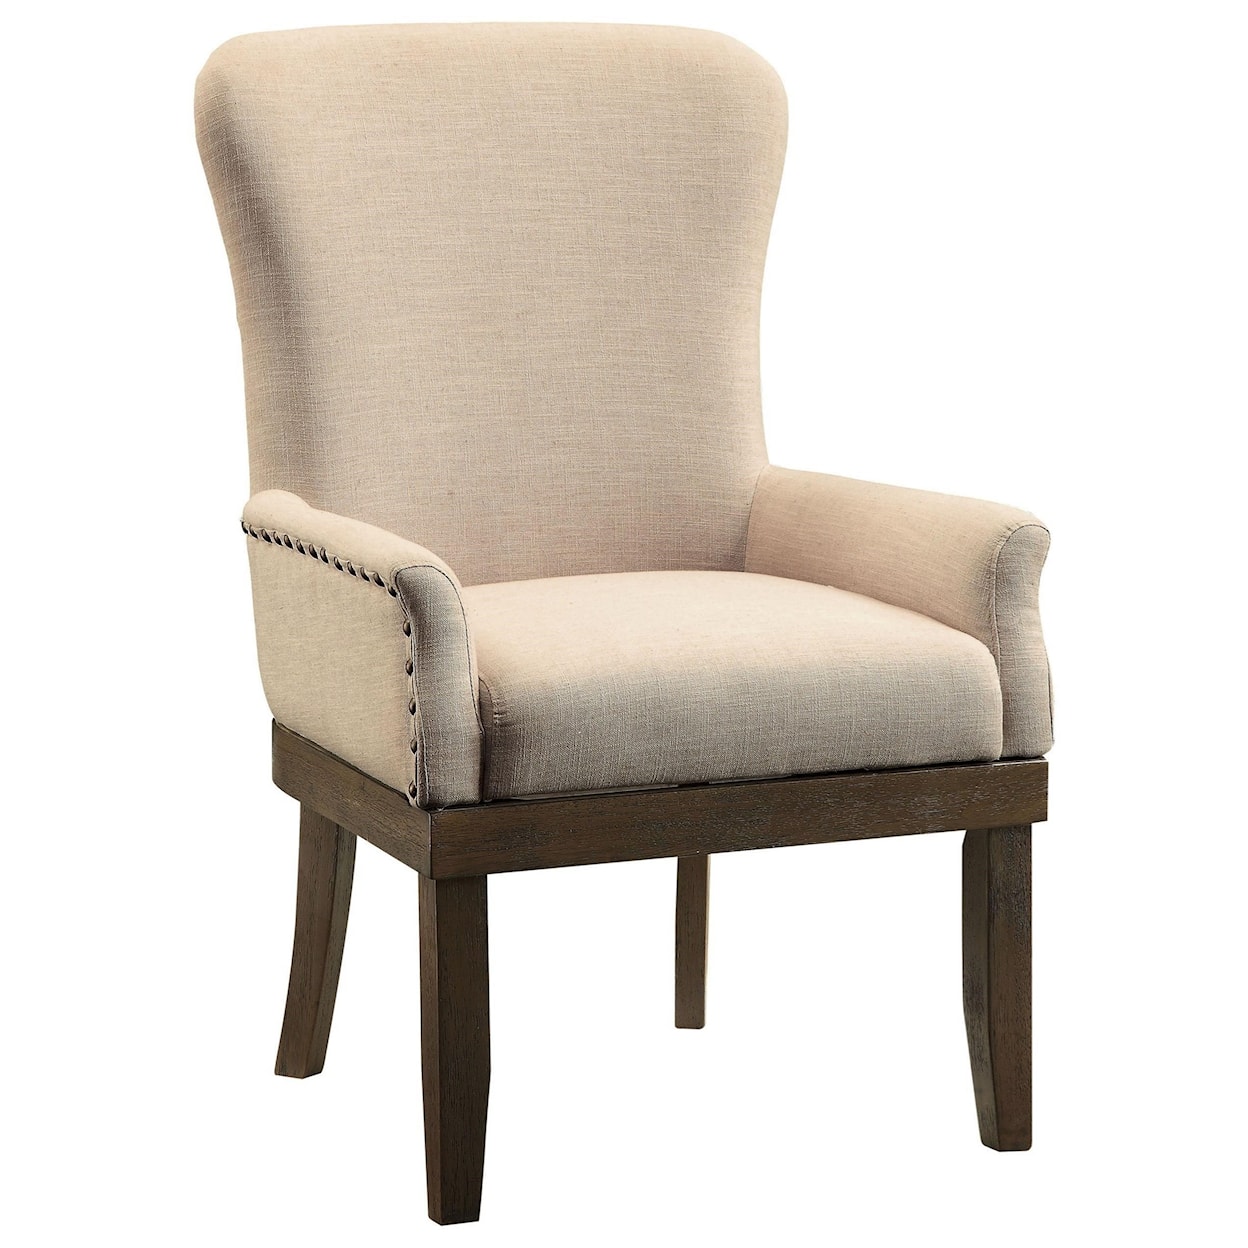 Acme Furniture Landon Arm Chair 